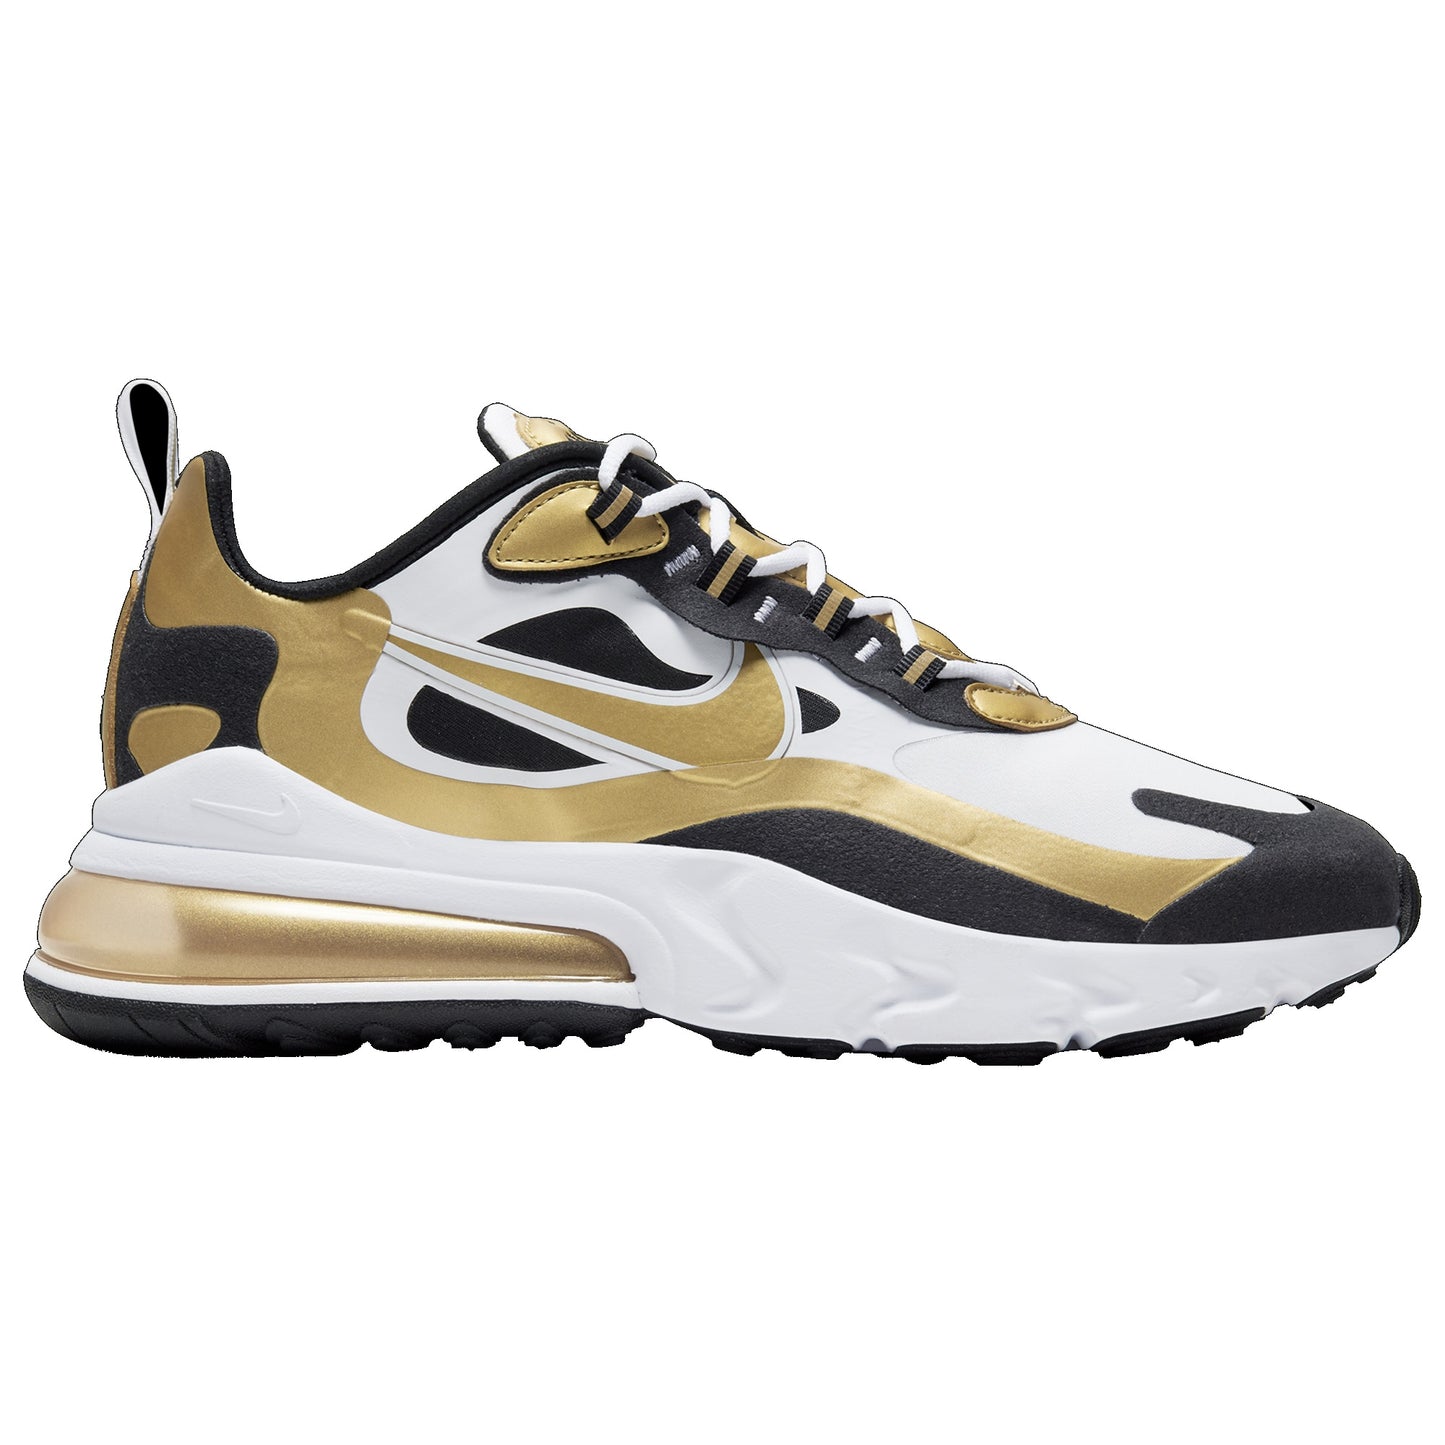 Men's Nike Air Max 270 React Running Shoes, CW7298 100 Multi Sizes White/Metallic Gold/Black